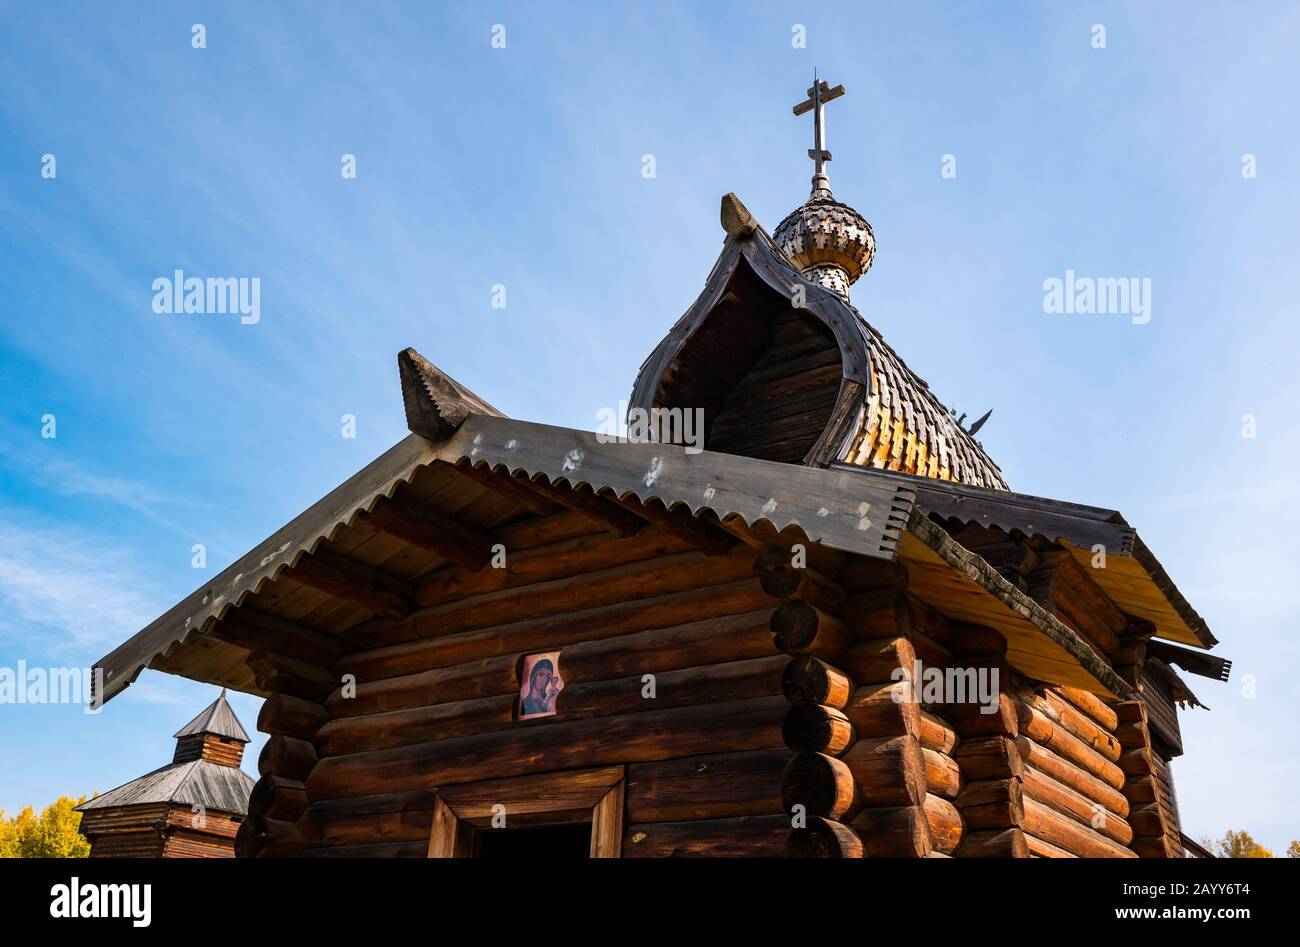 Holzkapelle oder Kirche im traditionellen Stil, russisch-orthodoxe Kapelle oder Kirche, Museum für Holzarchitektur in Taltsy, Region Irkutsk, Sibirien, Russland Stockfoto